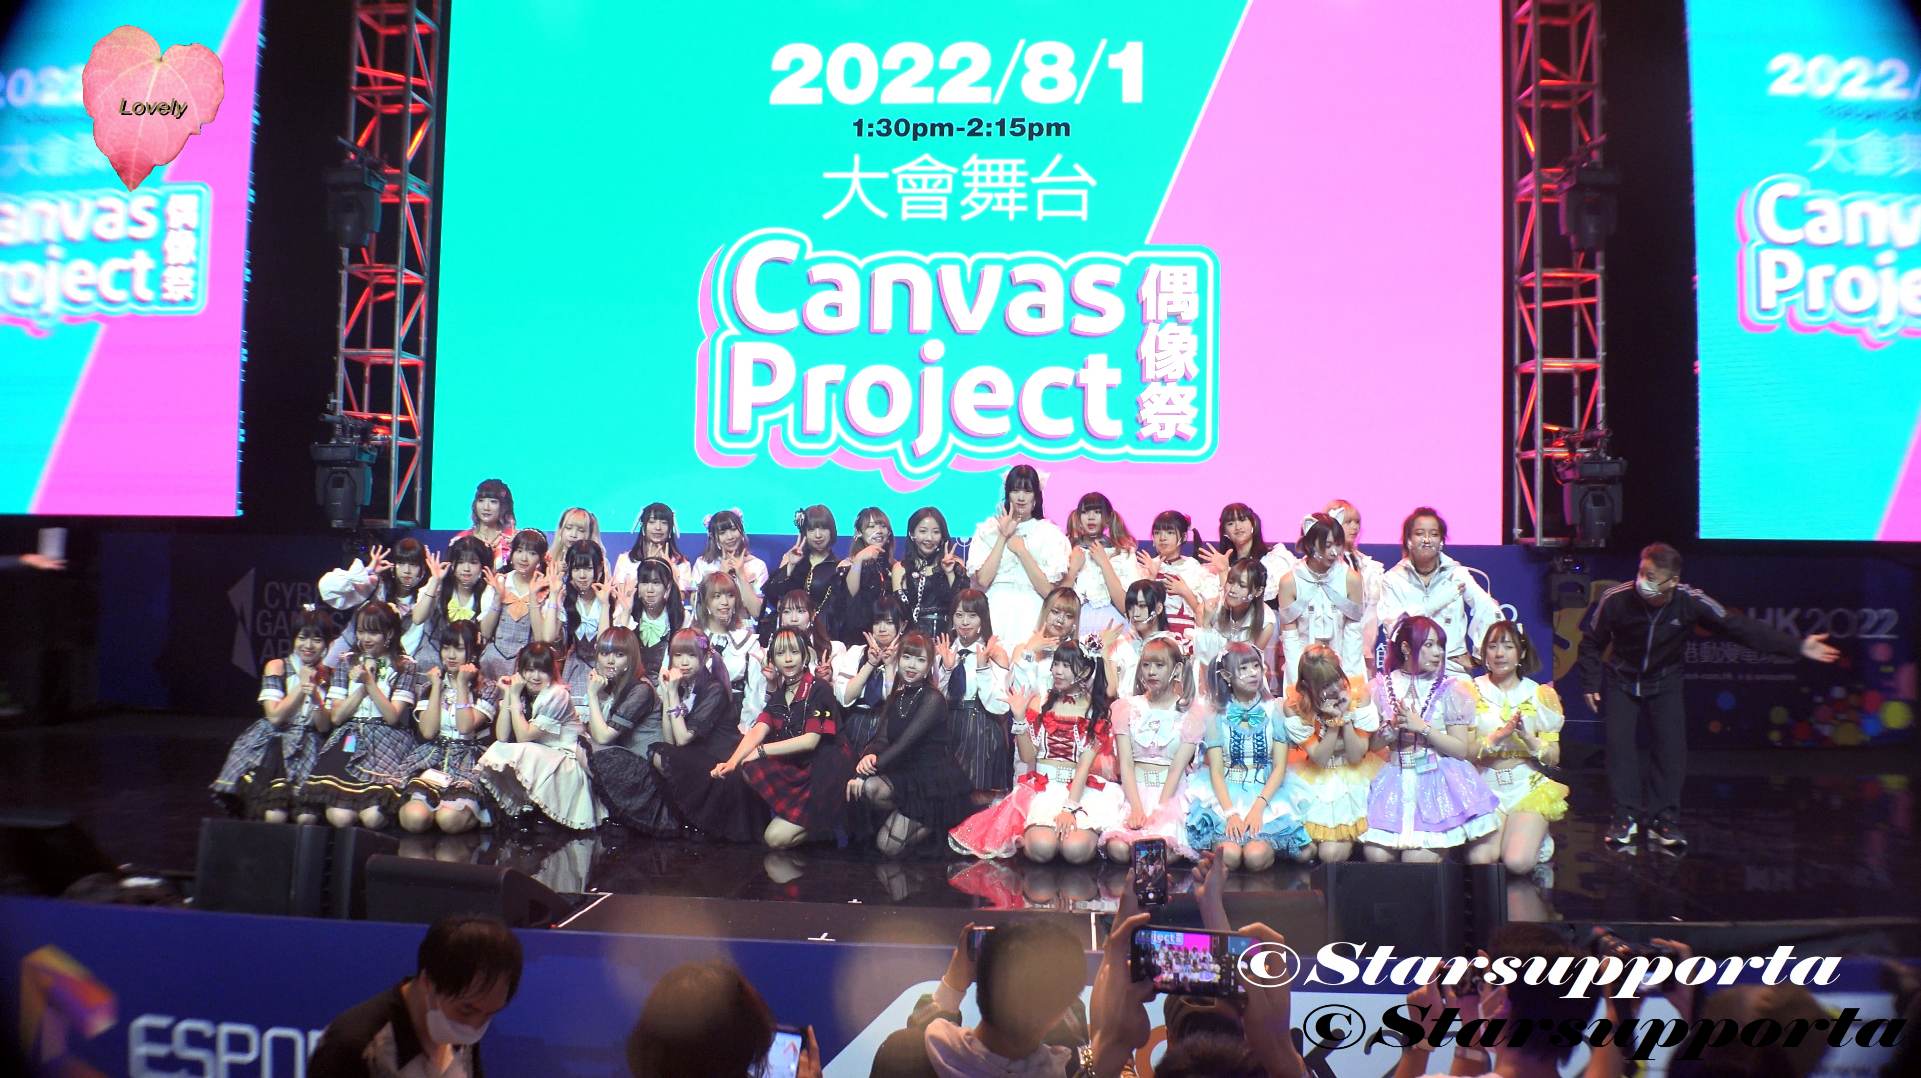 20220801 香港動漫電玩節2022 - Canvas Project 偶像祭 @ 香港會議展覽中心